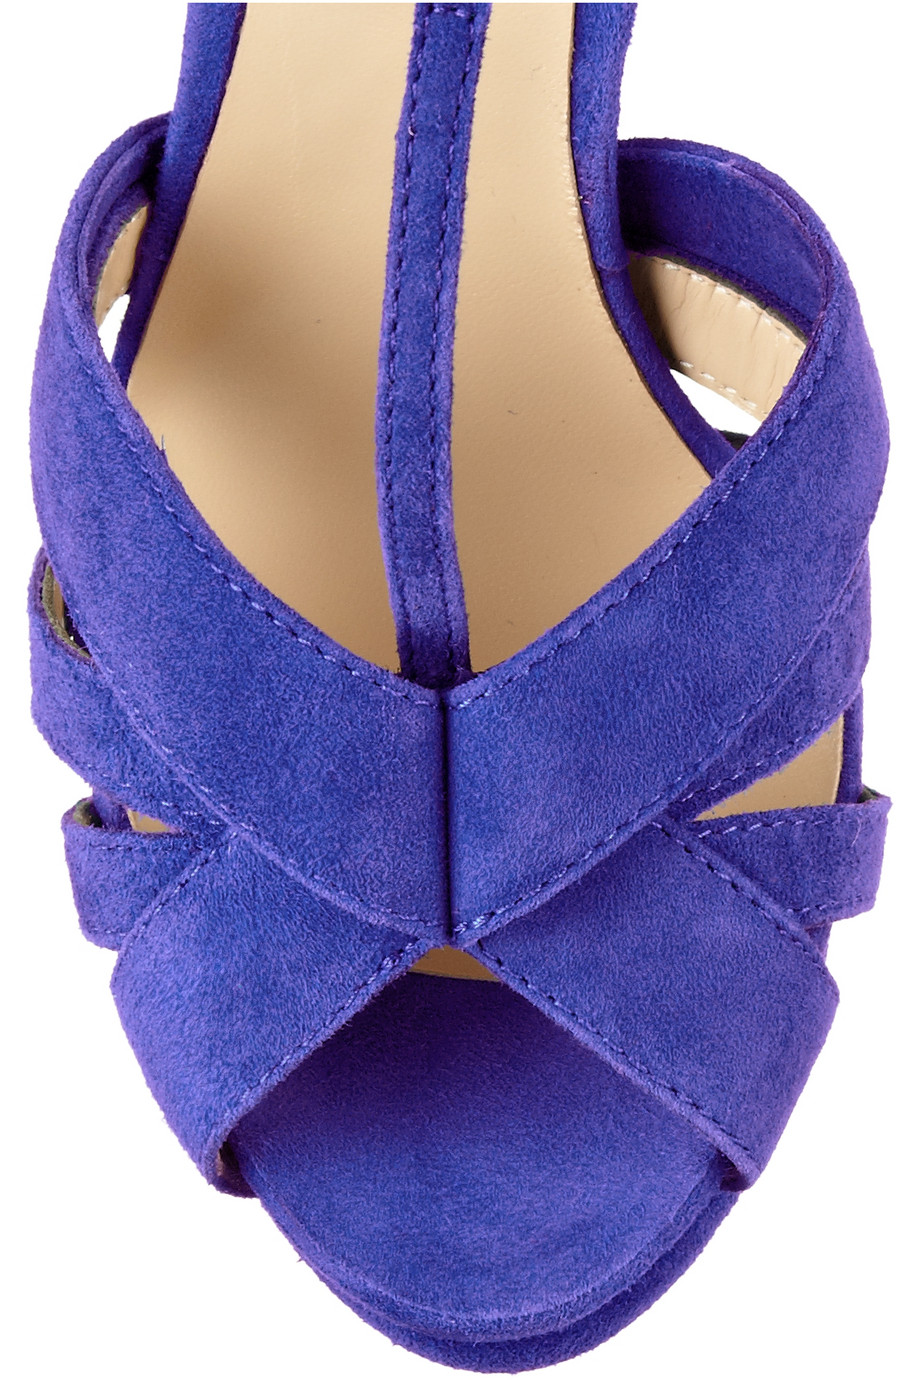 Lyst - Nicholas kirkwood Suede Sandals in Purple